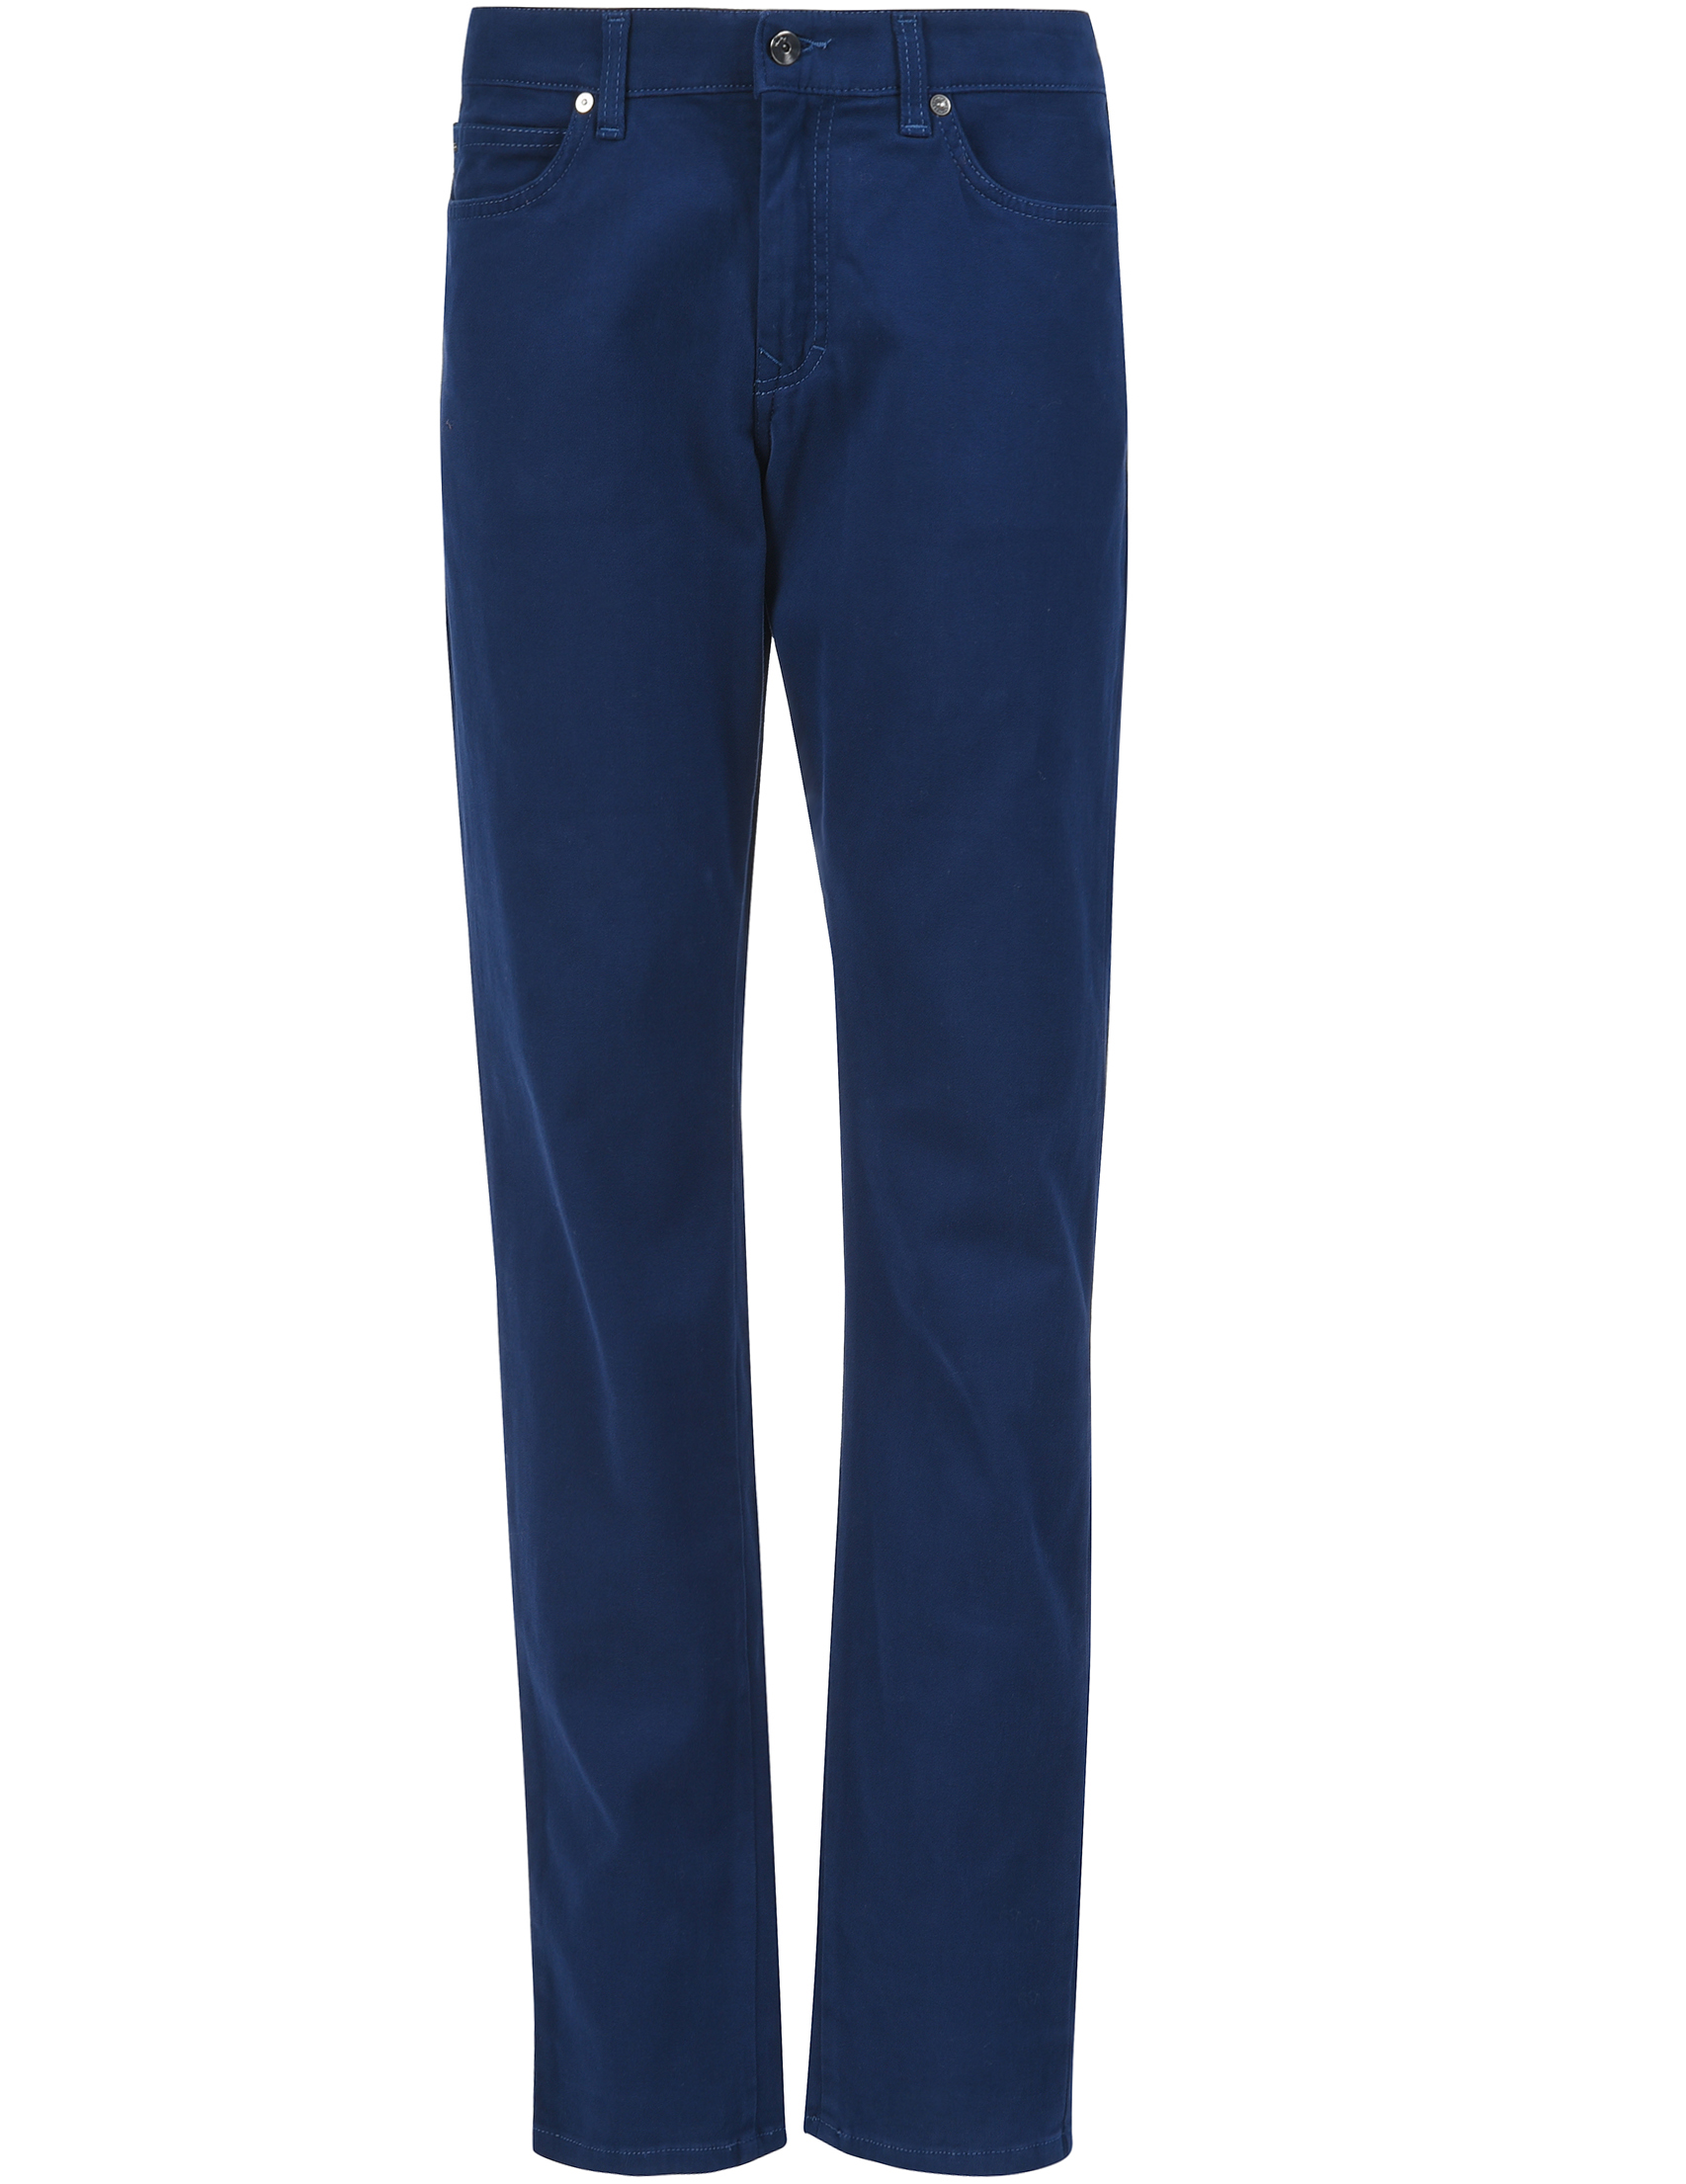 Мужские брюки HARMONTBLAINE PW118052402802_blue